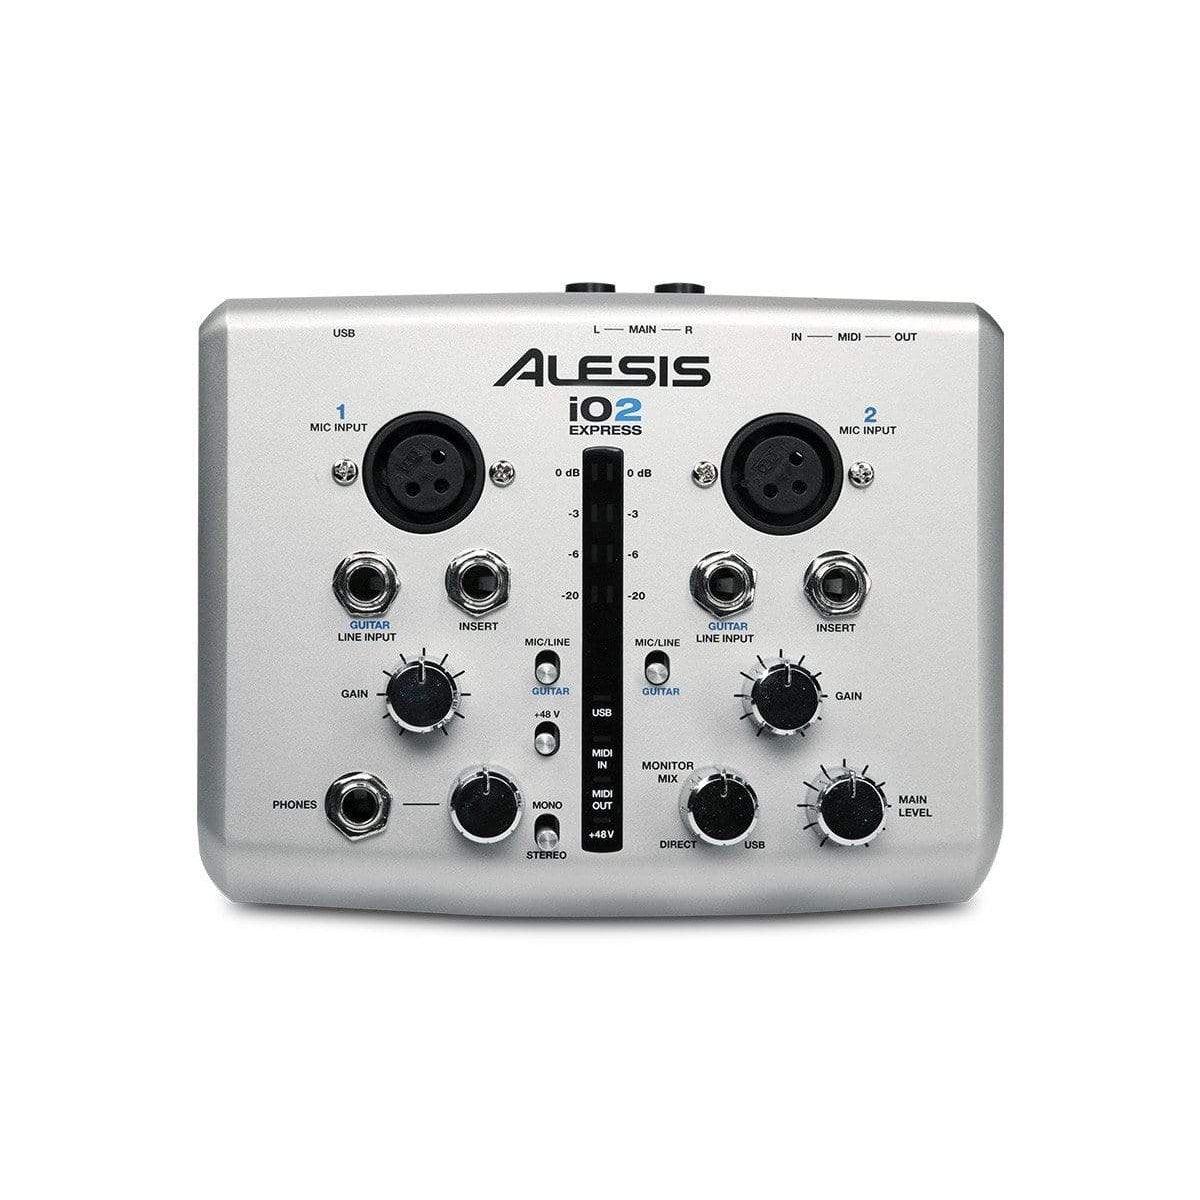 Alesis IO2 Express Audio Interface